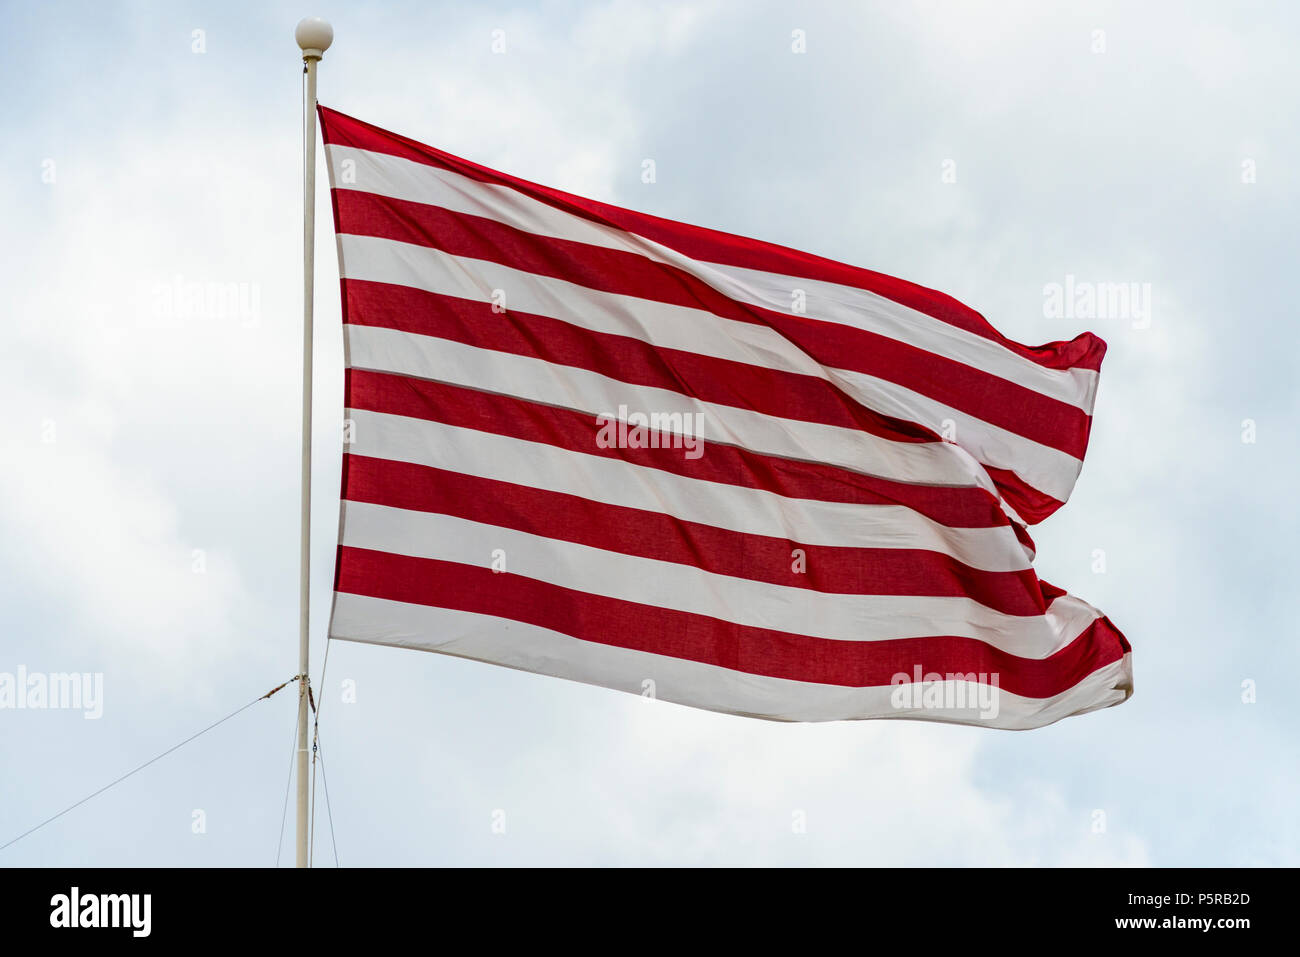 Una bandiera marittima a strisce rosse e bianche che batte contro un'ottusa e sovraimera day.in Malta. È stato utilizzato per identificare lo yacht 'Gloriana' Foto Stock